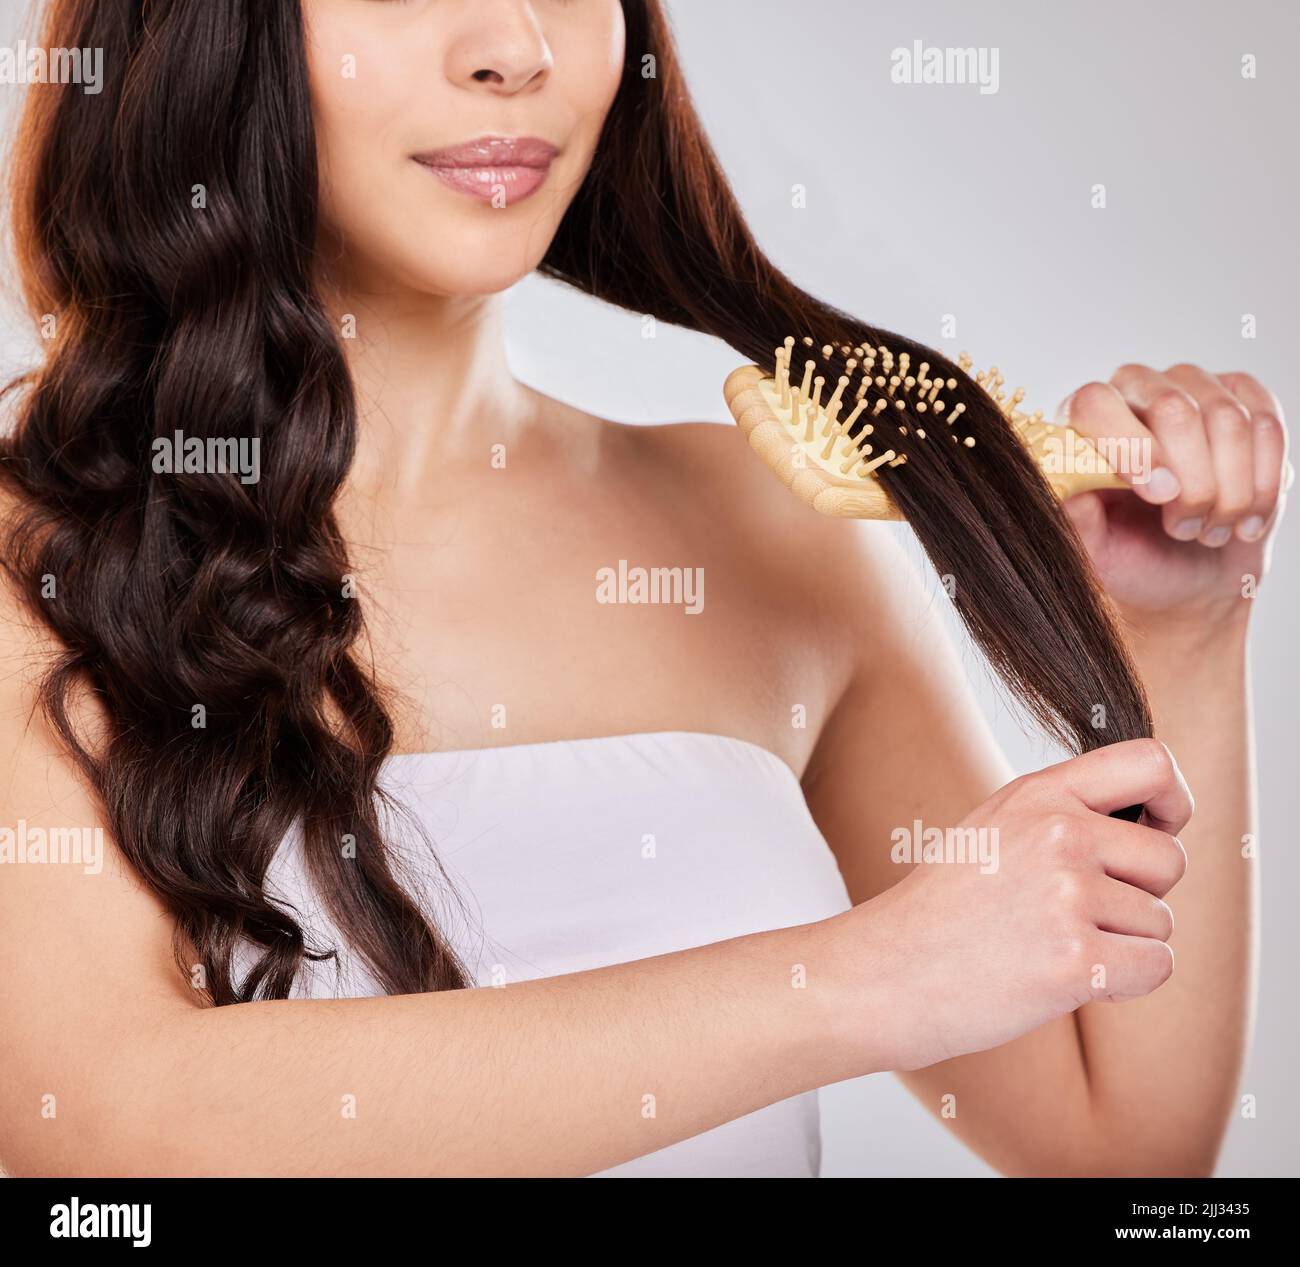 Tragen Sie einen Hitzeschutz auf und stylen Sie Ihr Haar, wie Sie möchten. Studioaufnahme einer jungen Frau, die sich die Haare putzt. Stockfoto